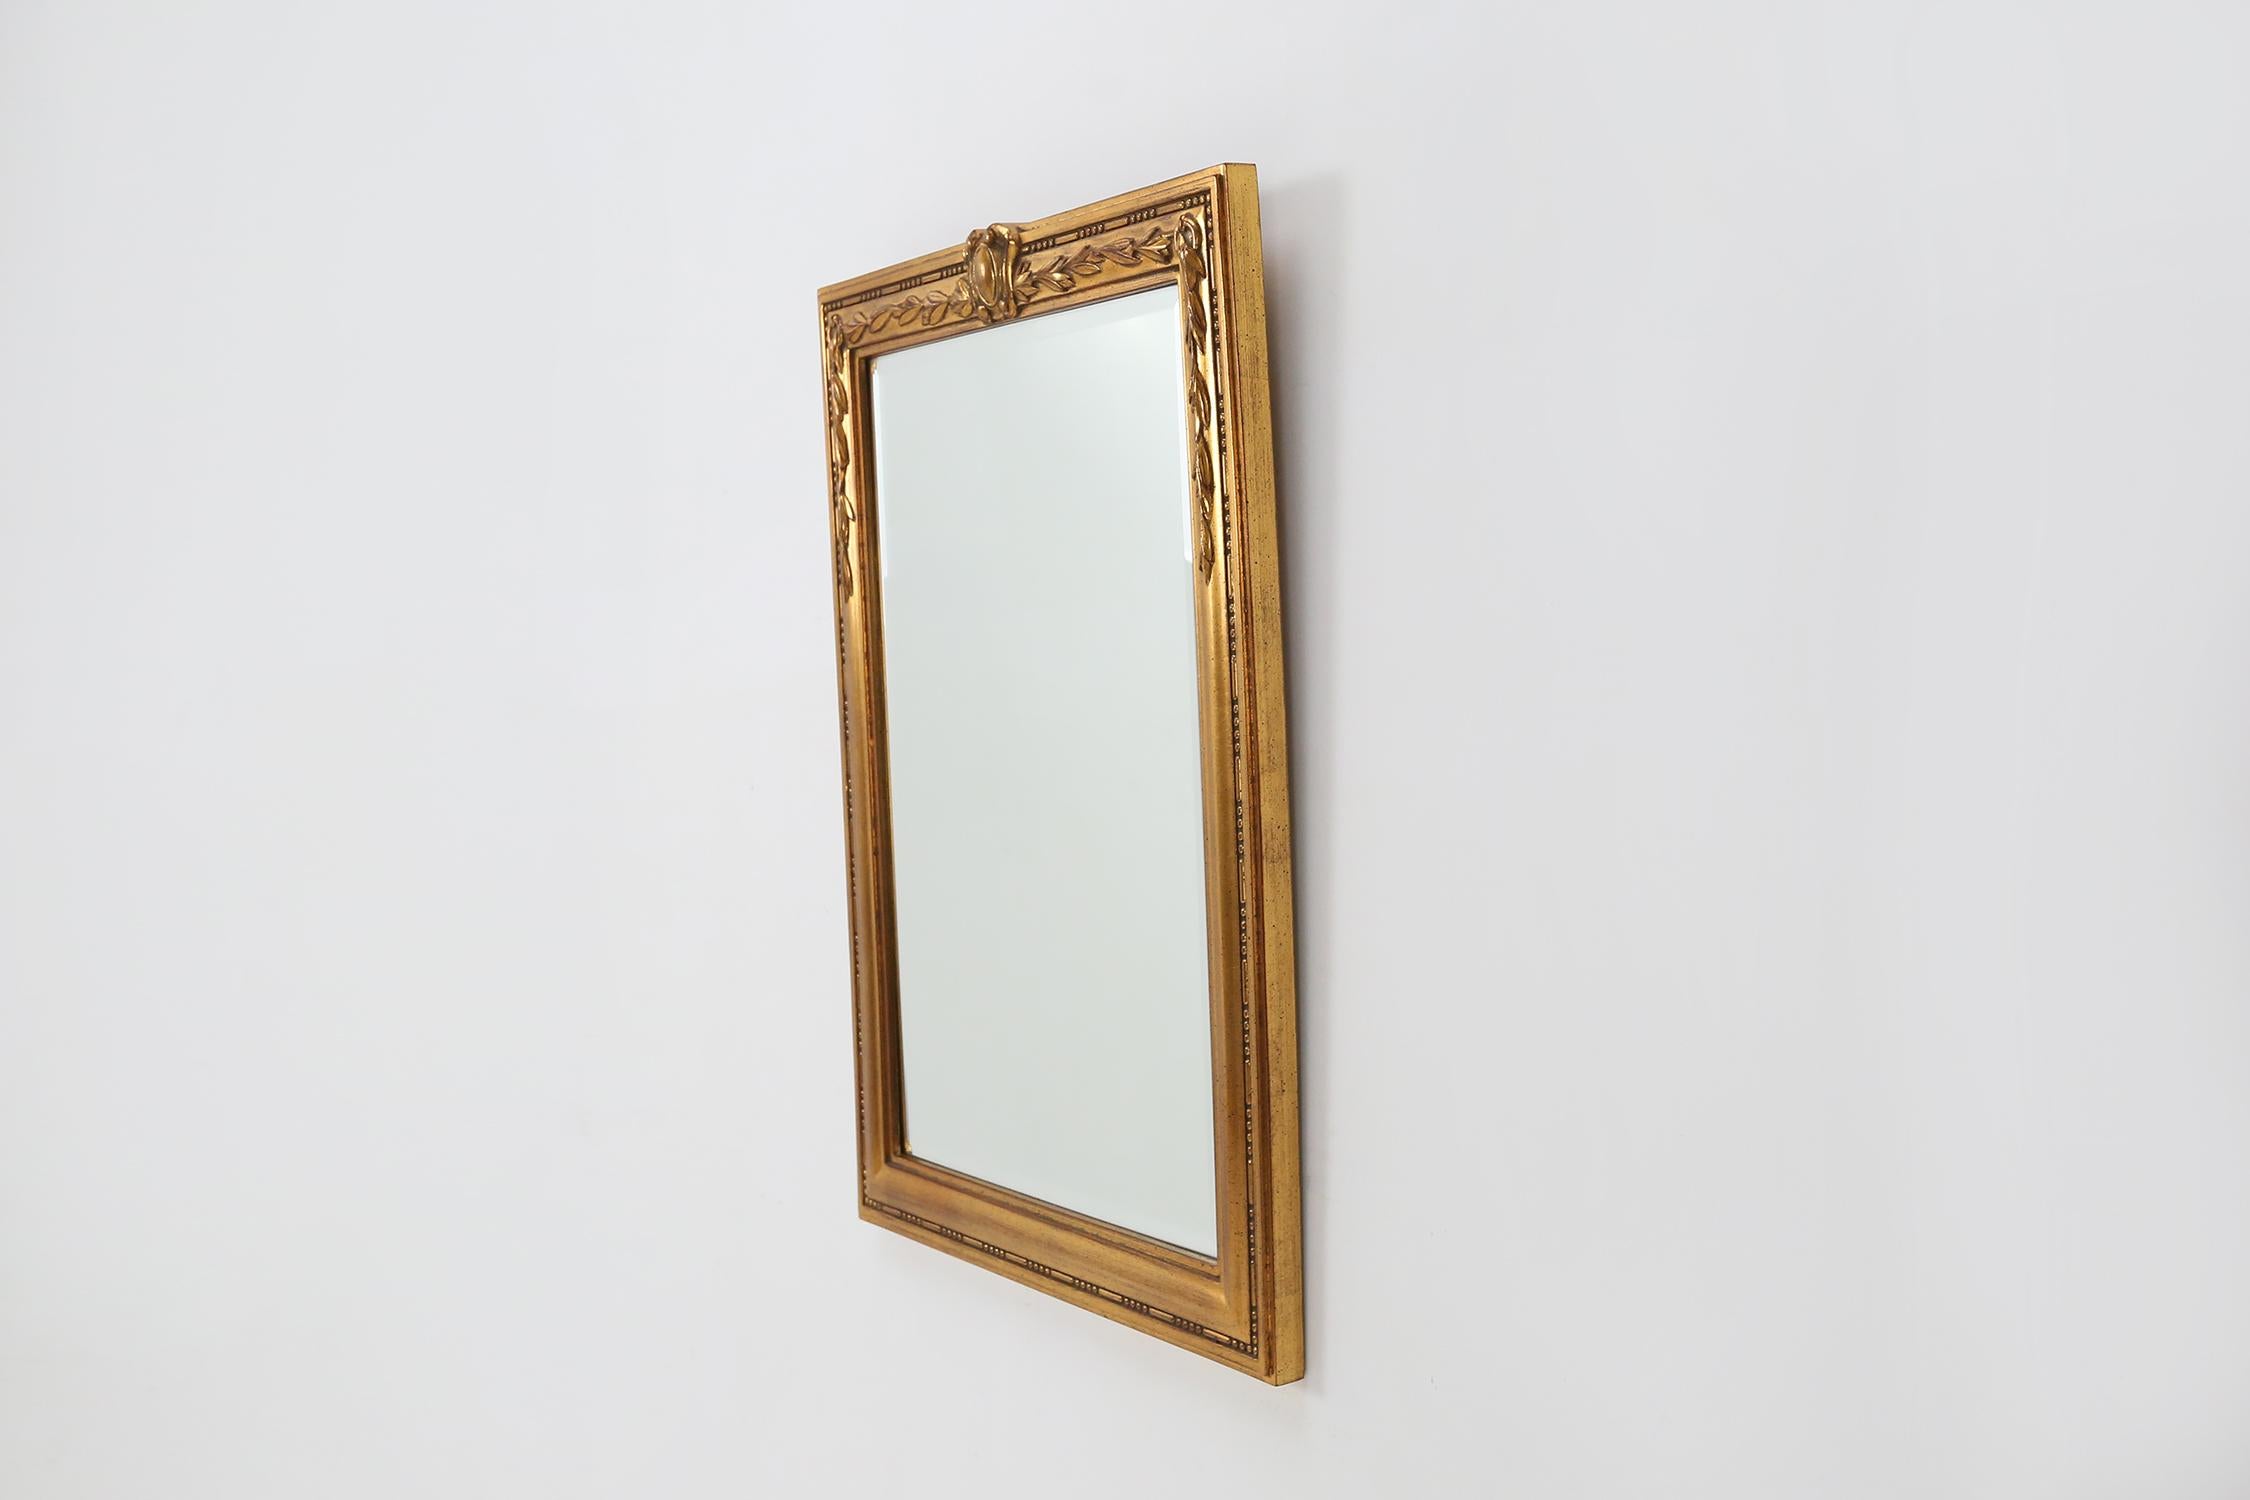 Miroir doré fabriqué en Belgique vers 1970.
Whit a de beaux détails sculpturaux.